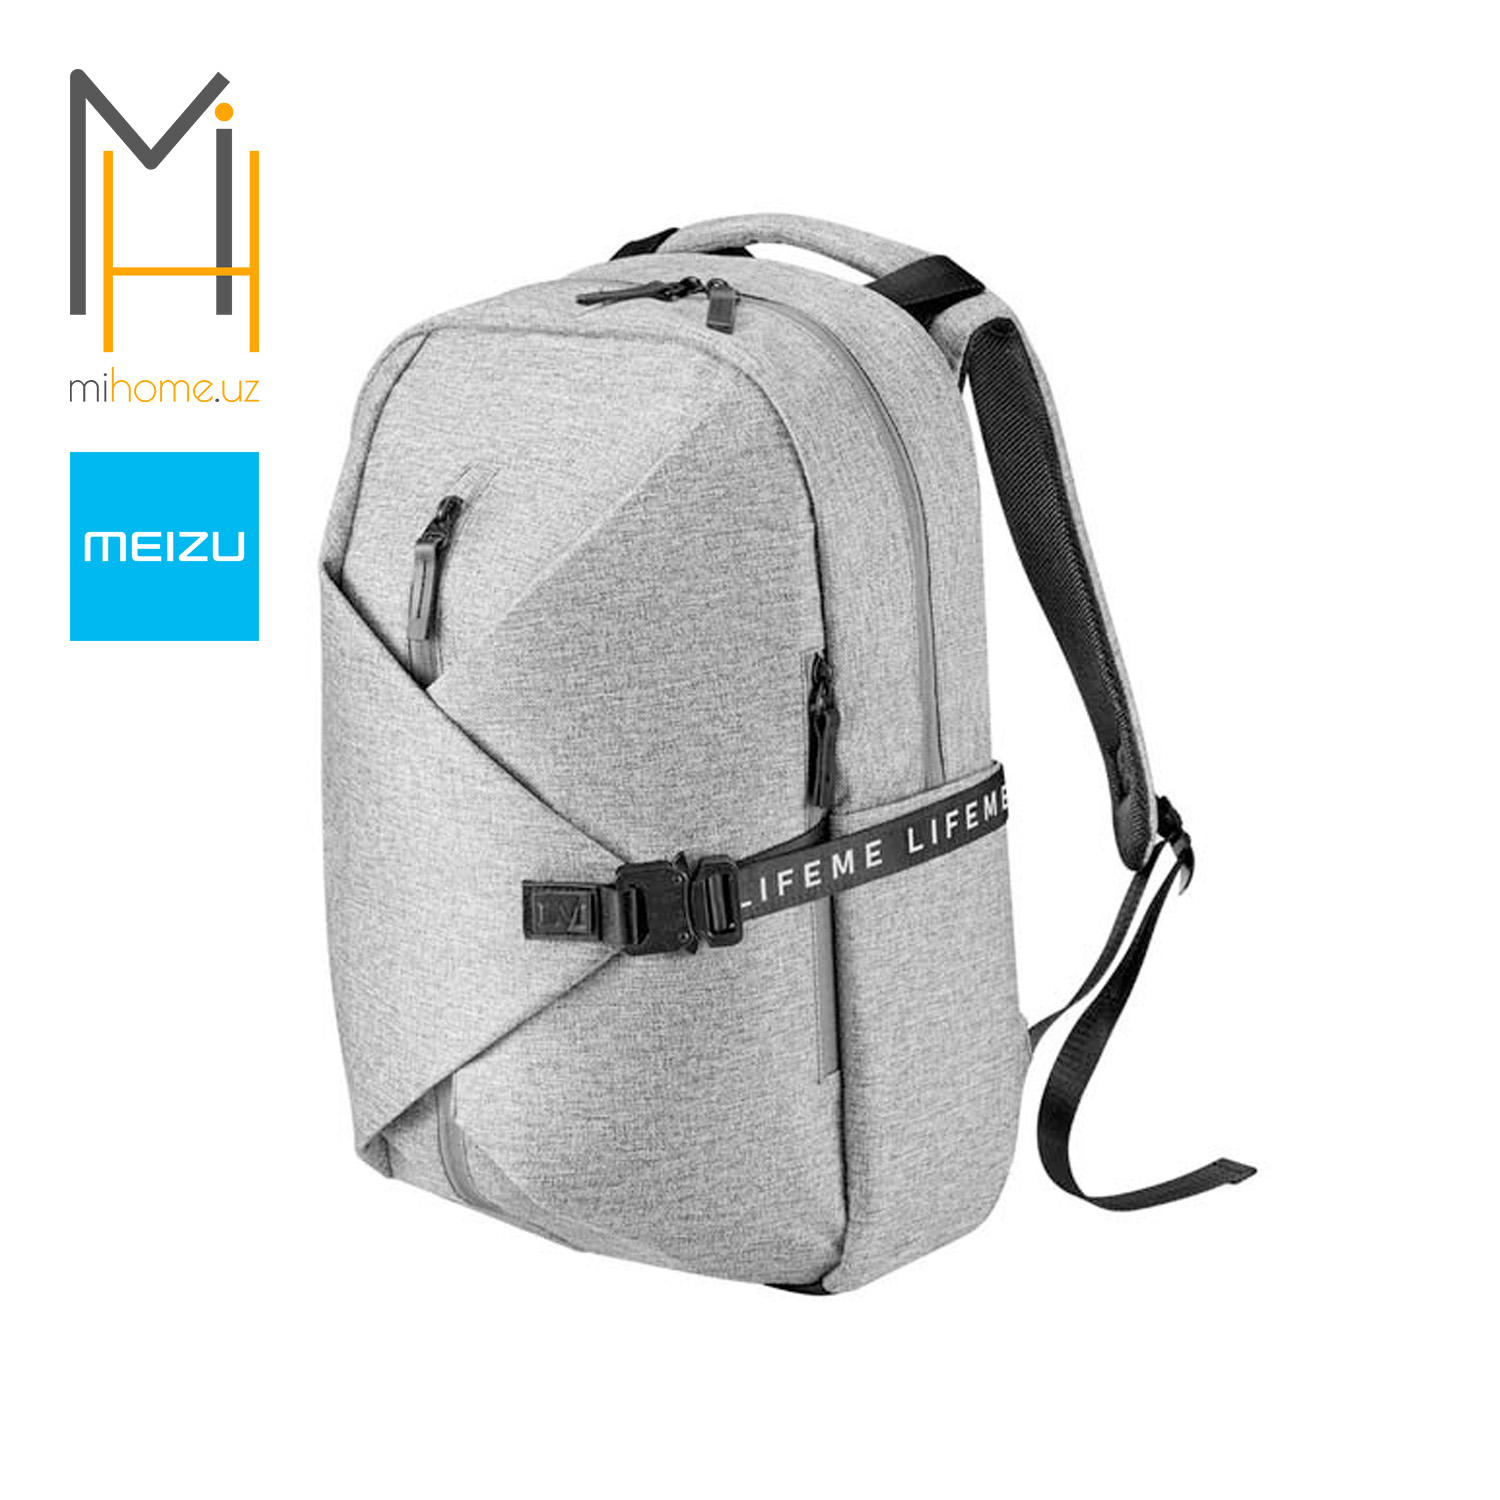 Обзор рюкзака meizu backpack - itc.ua